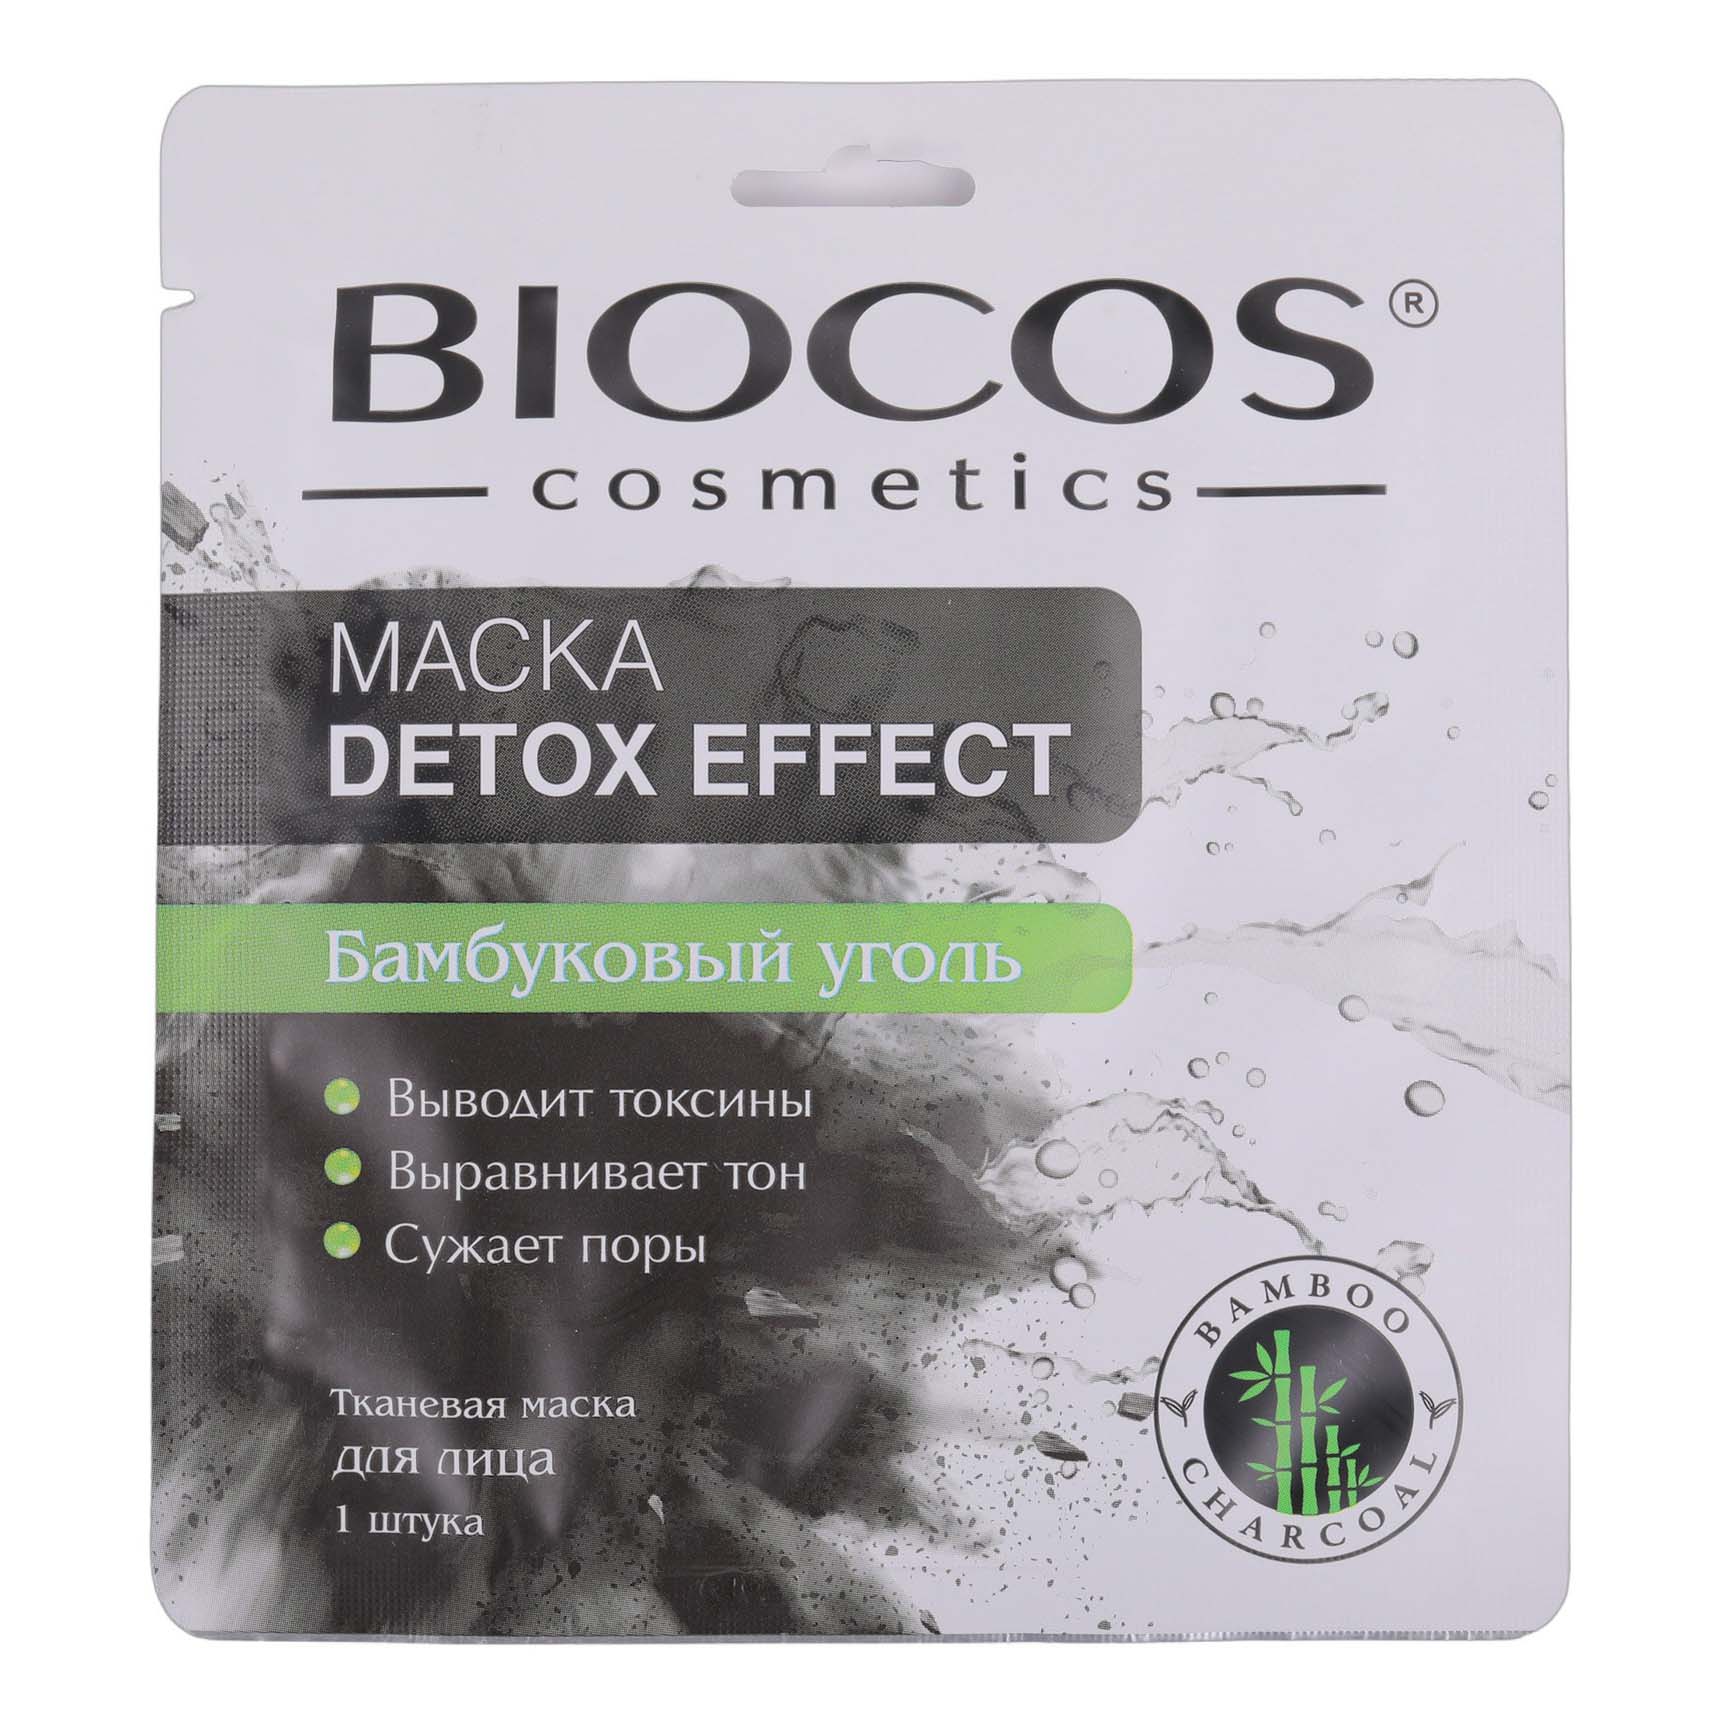 Маска тканевая для лица Biocos Detox Effect с бамбуковым углем 1 шт selfielab young детокс маска для лица на основе розовой глины с экстрактом винограда 50